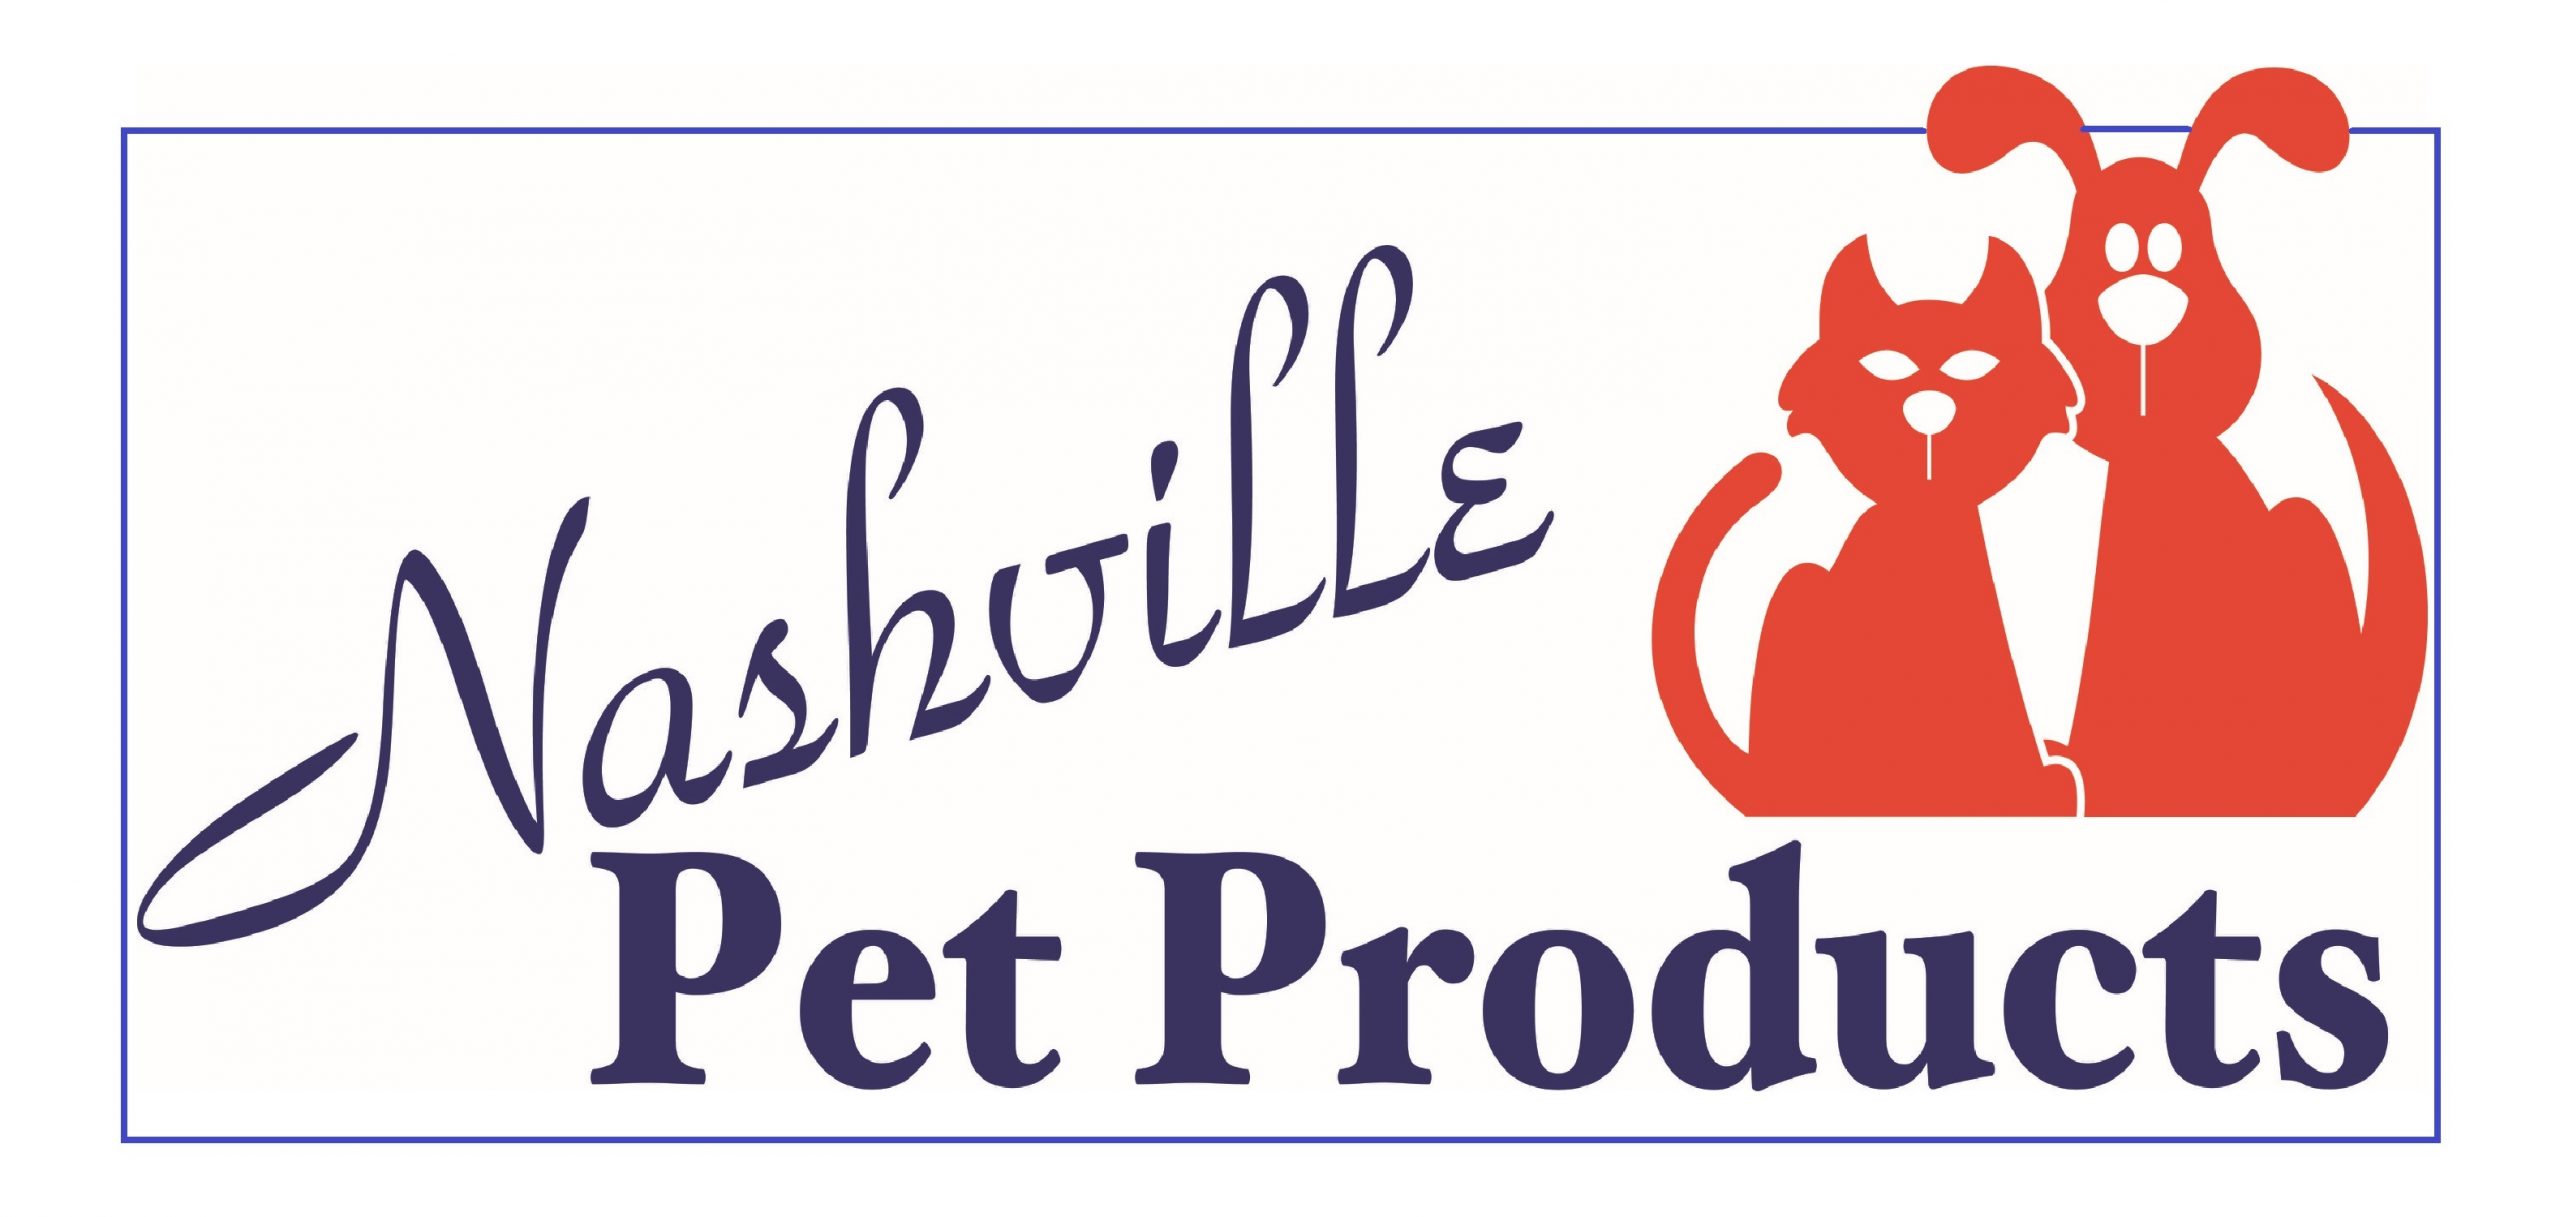 Nashville Pet Products